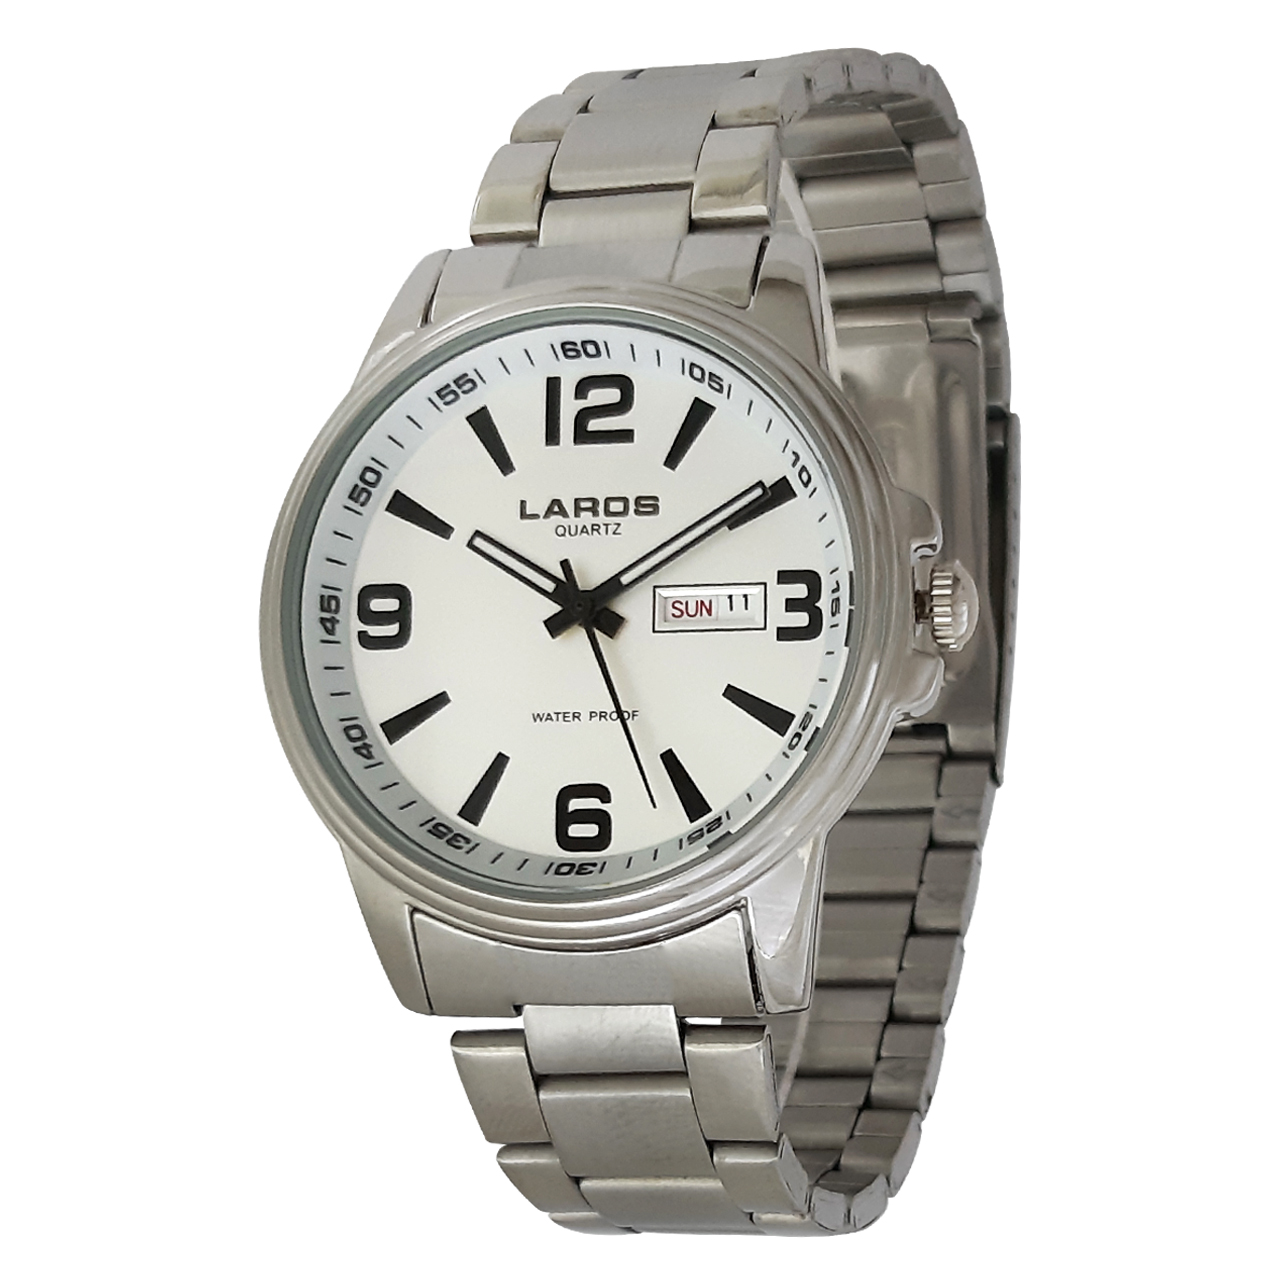 قیمت ساعت مچی عقربه ای مردانه لاروس مدل0817-79953-dd به همراه دستمال مخصوص برند کلین واچ